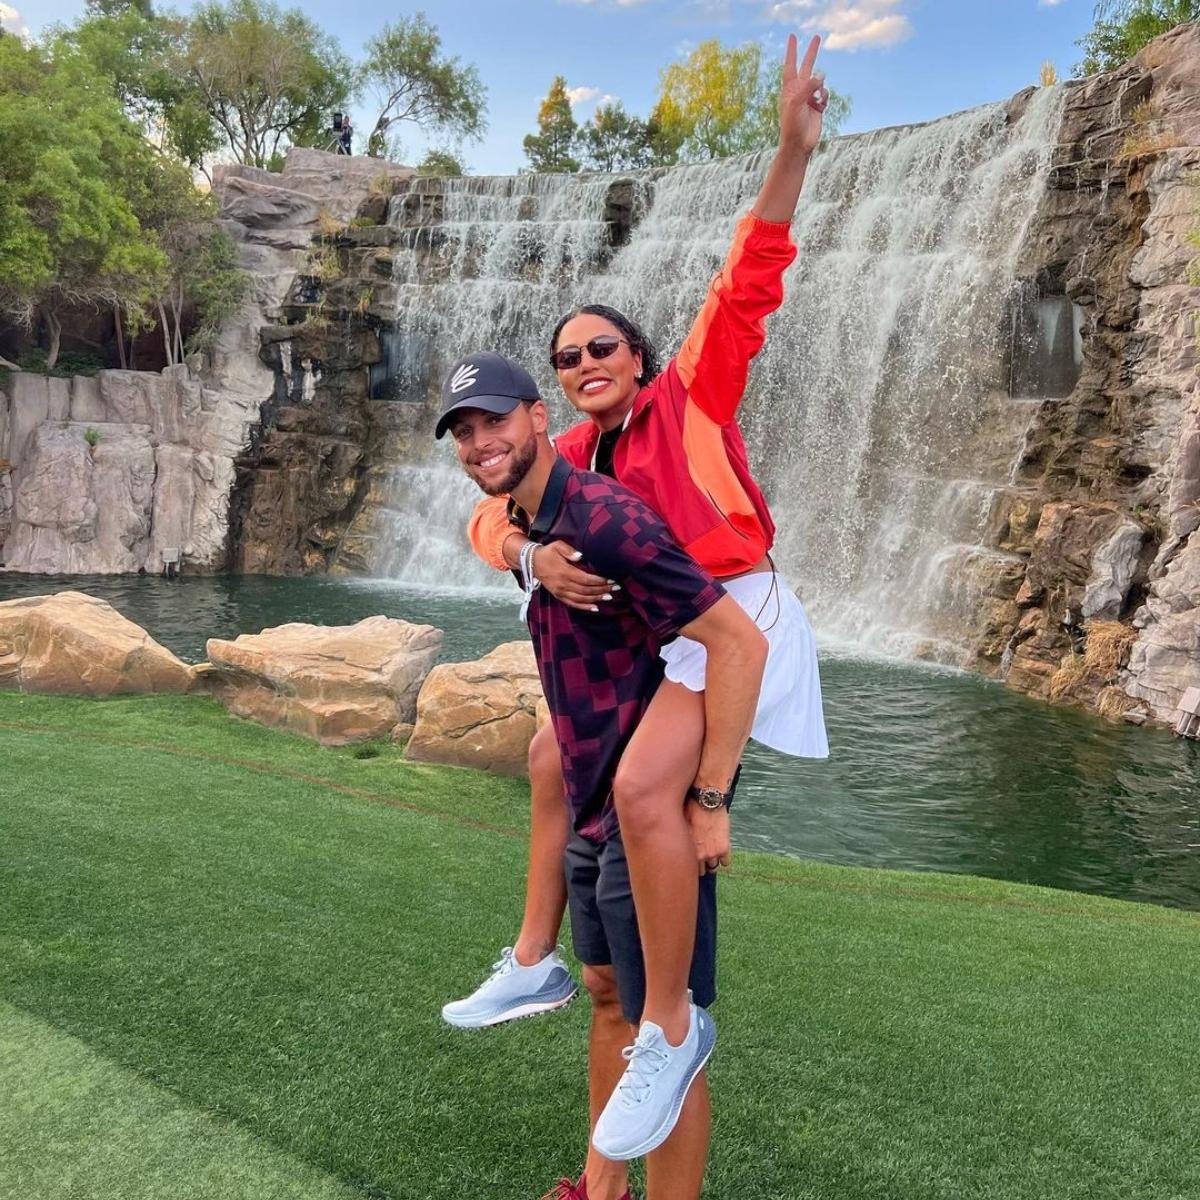 Ayesha Curry rider på Steph Currys rygg, ler framför ett vattenfall.